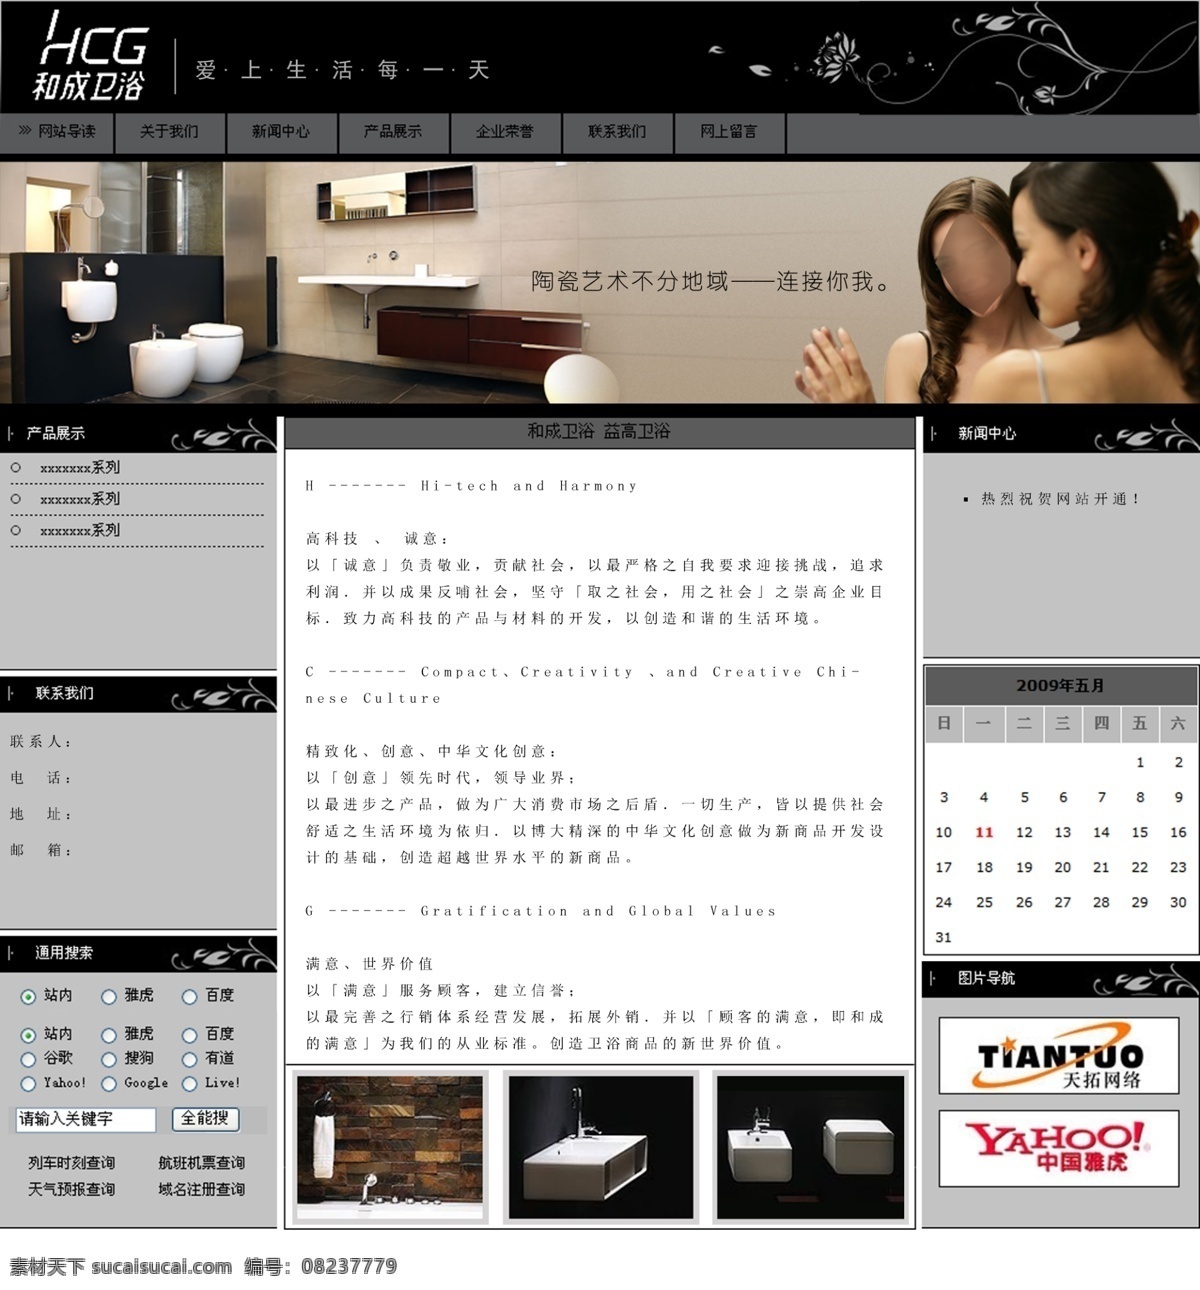 网页制作 钢材 网页创意 网页模板 网页设计 源文件 中文模版 网页素材